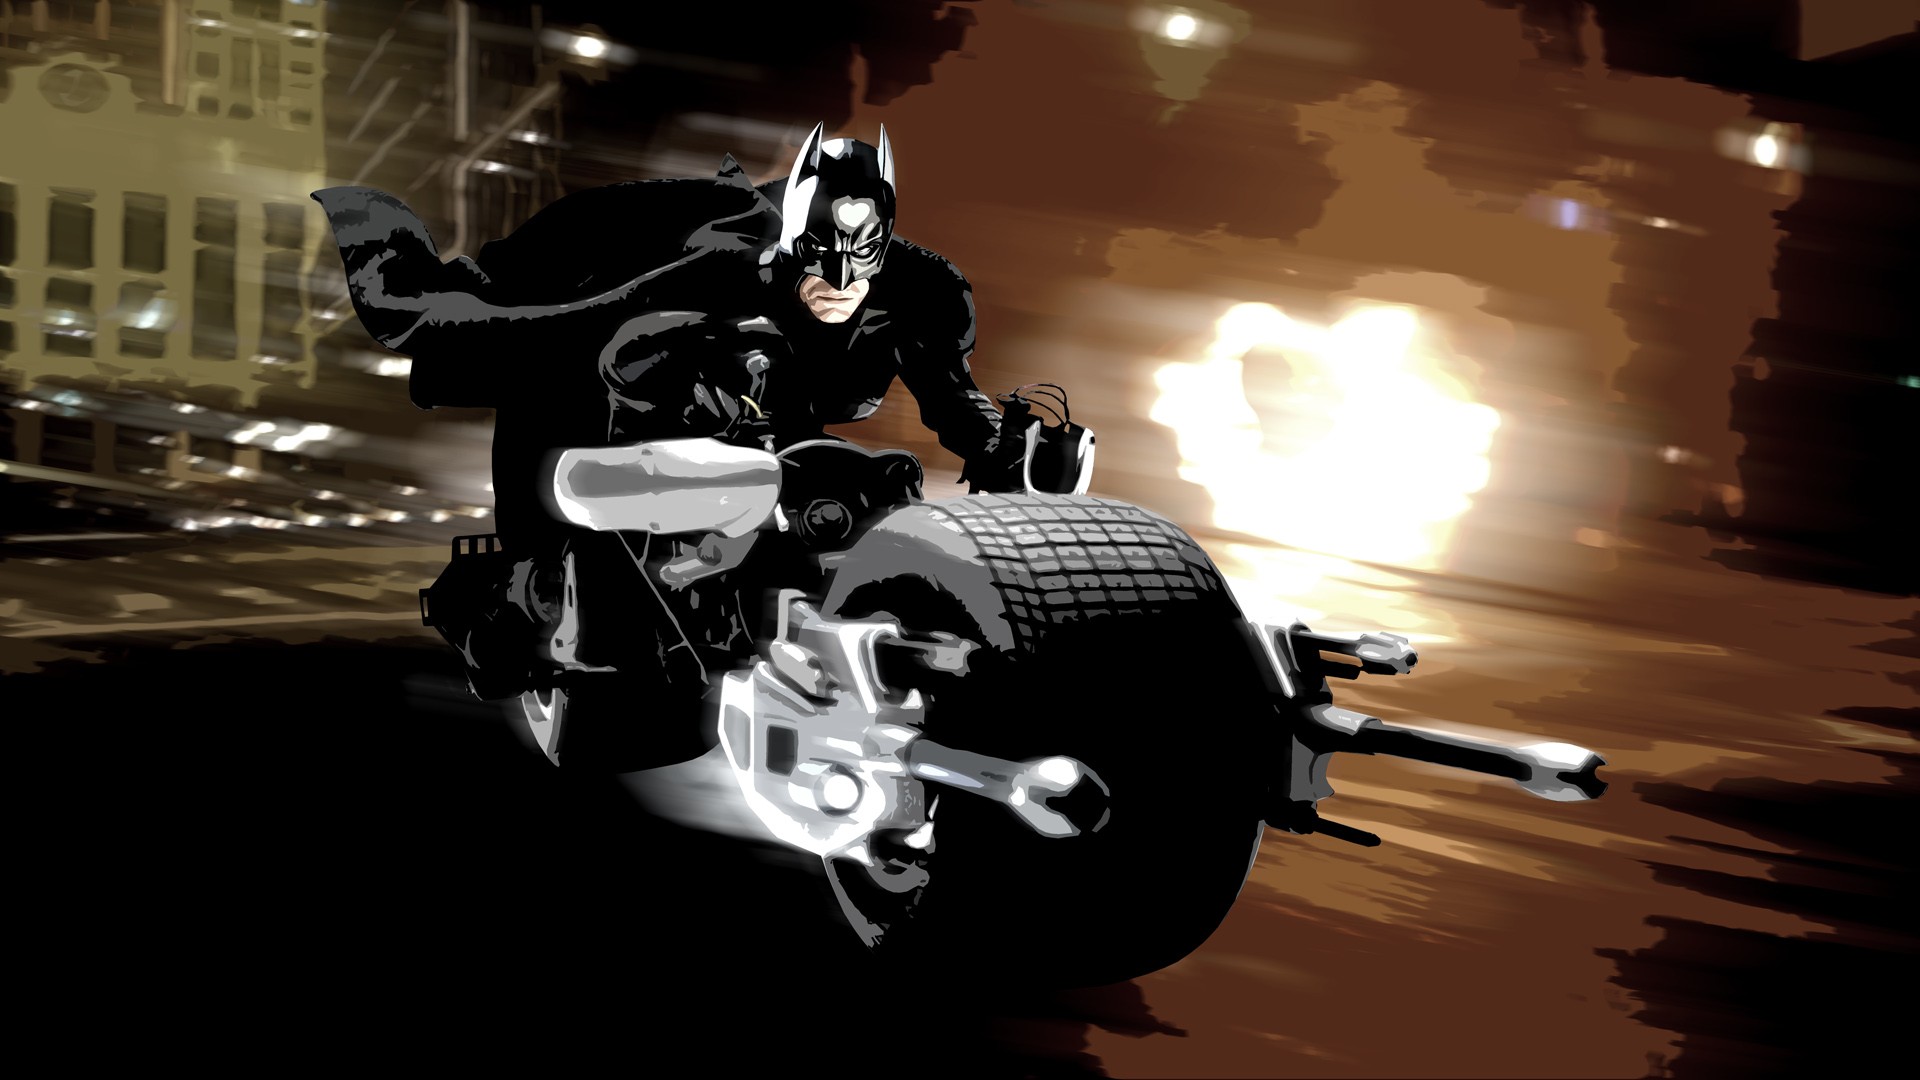 Movies Batman The Dark Knight MessenjahMatt 1920x1080